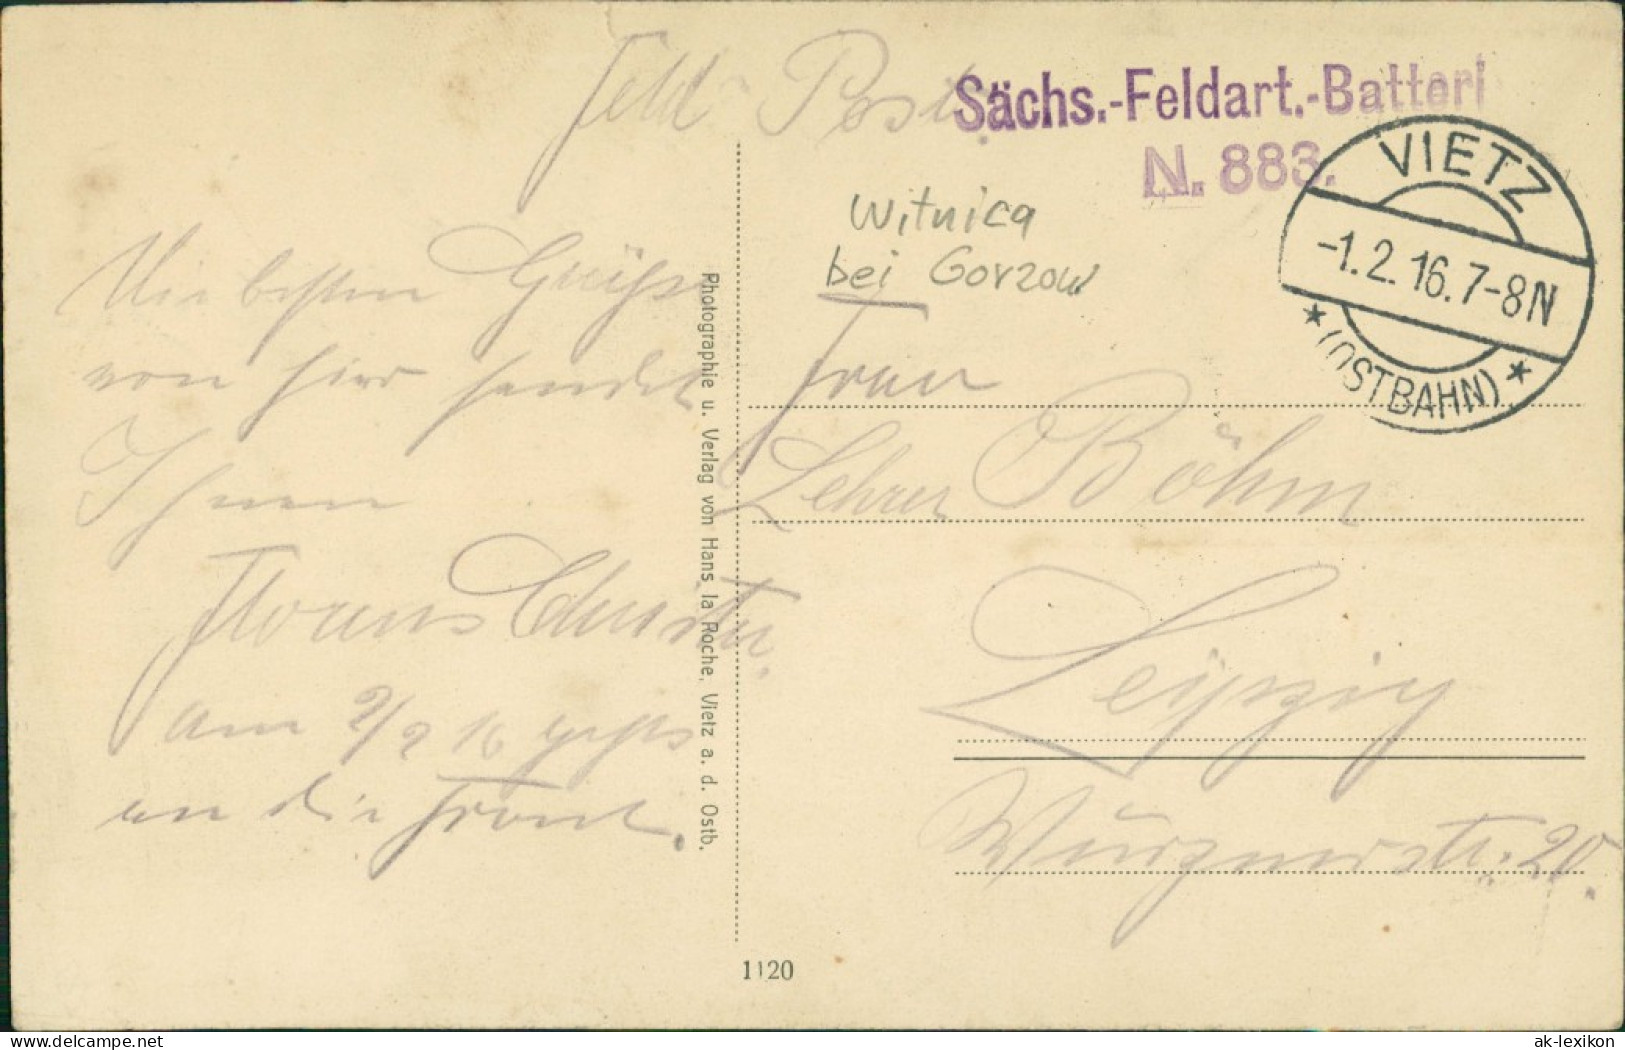 Postcard Vietz (Ostbahn) Witnica Gasthaus M. Schulz 1916 - Neumark